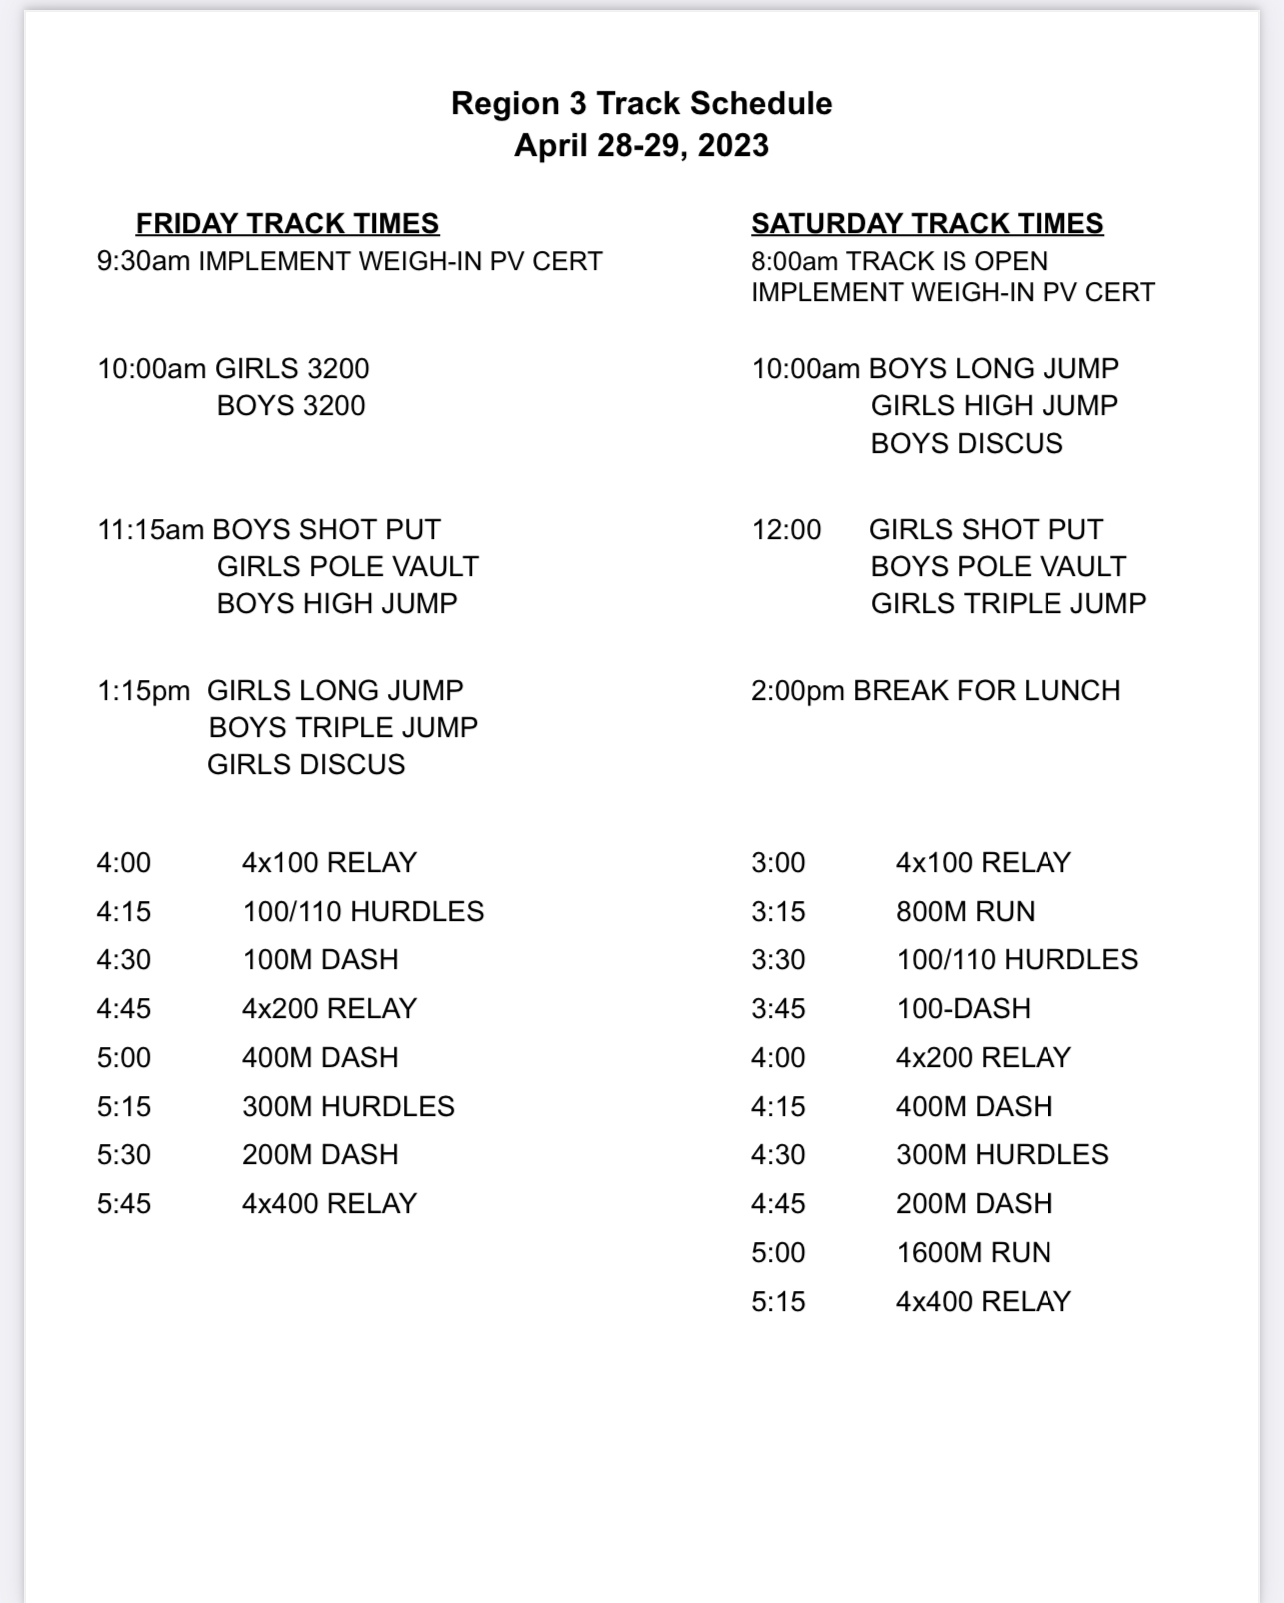 Region 3 Track Meet Information